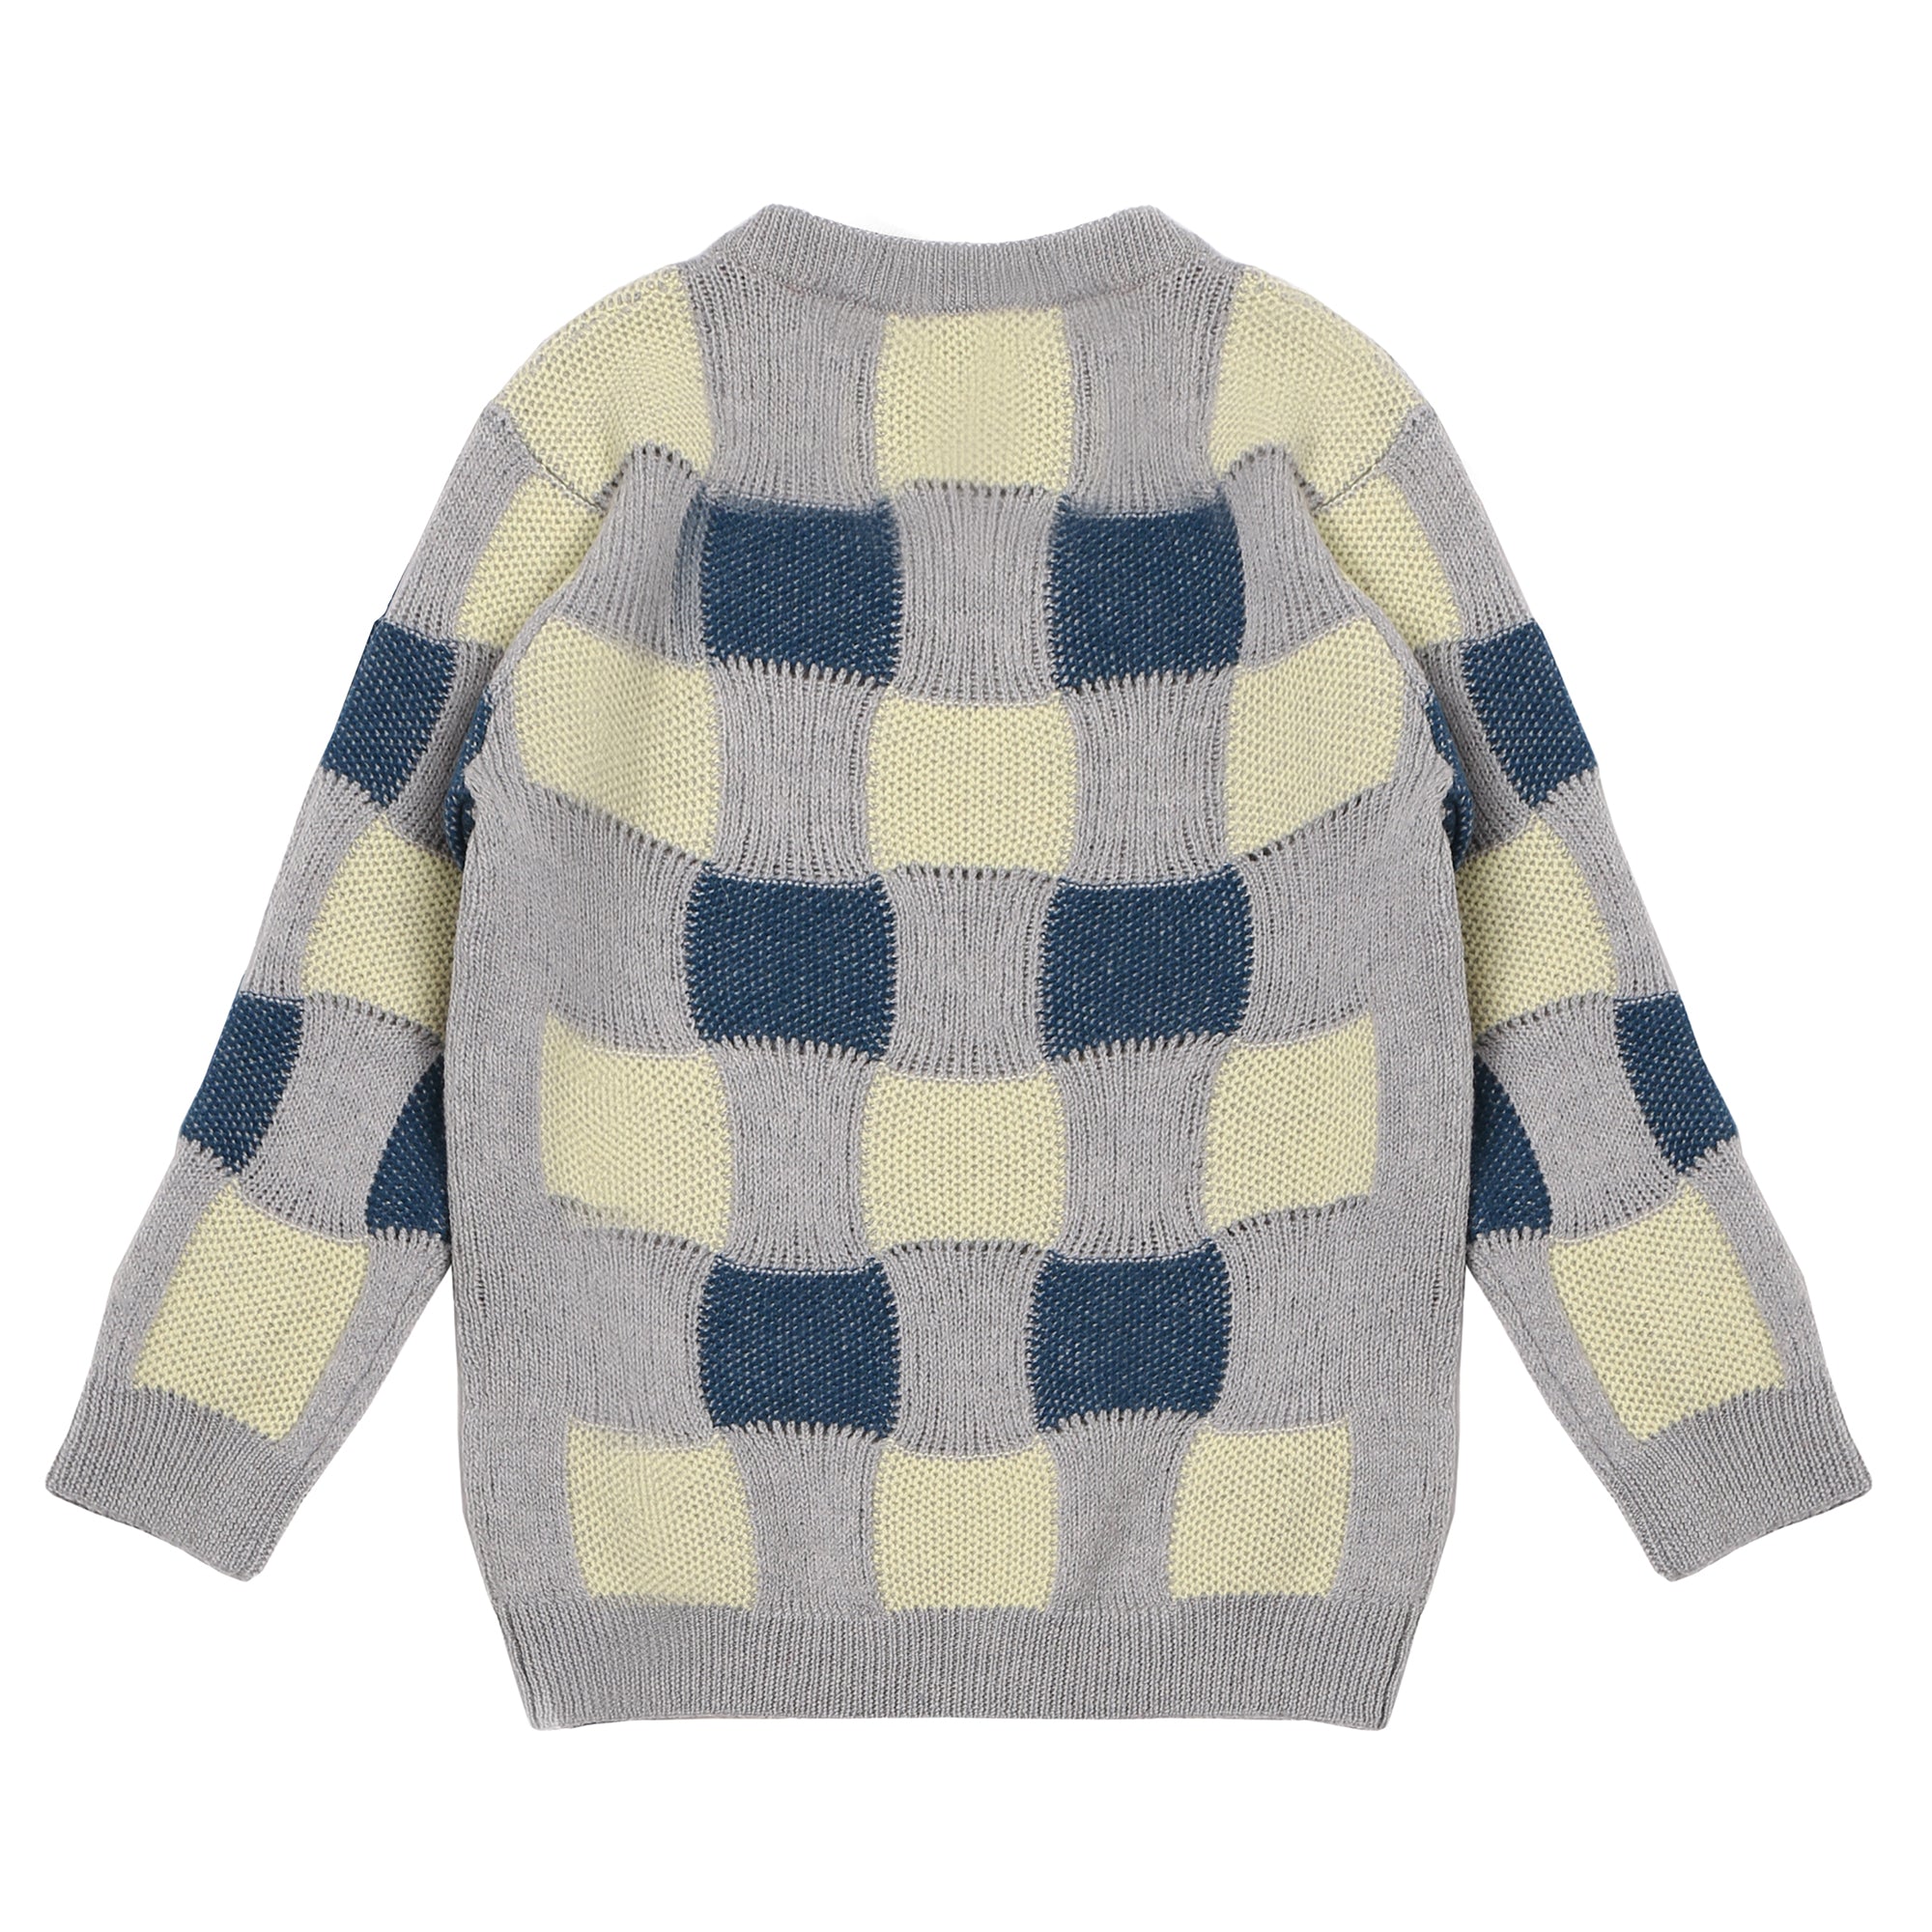 Girls Beige & Grey Wool Sweater